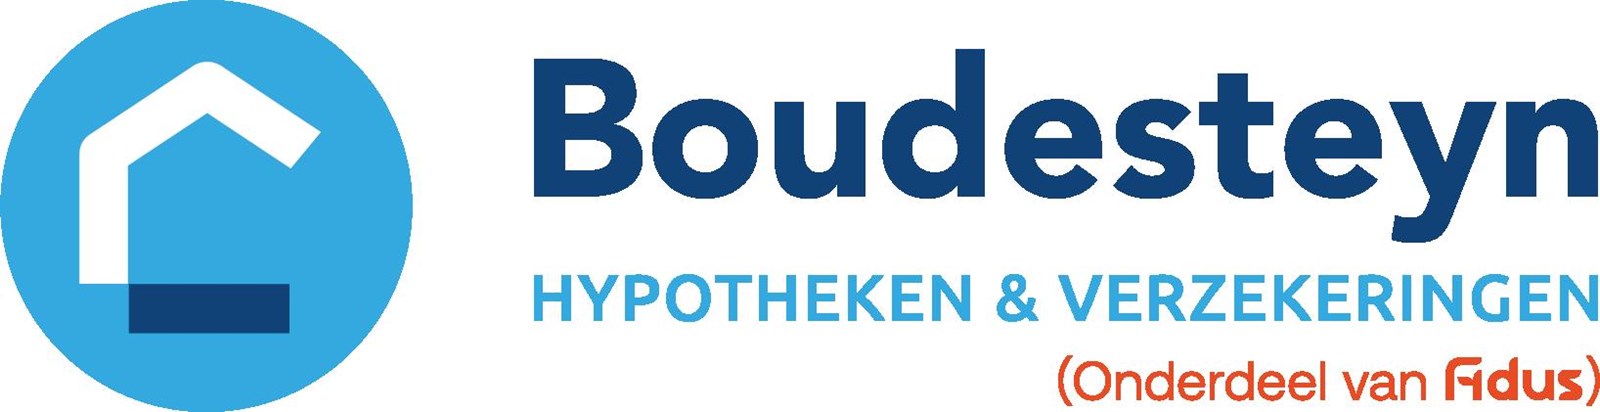 Boudesteyn Hypotheken & Verzekeringen